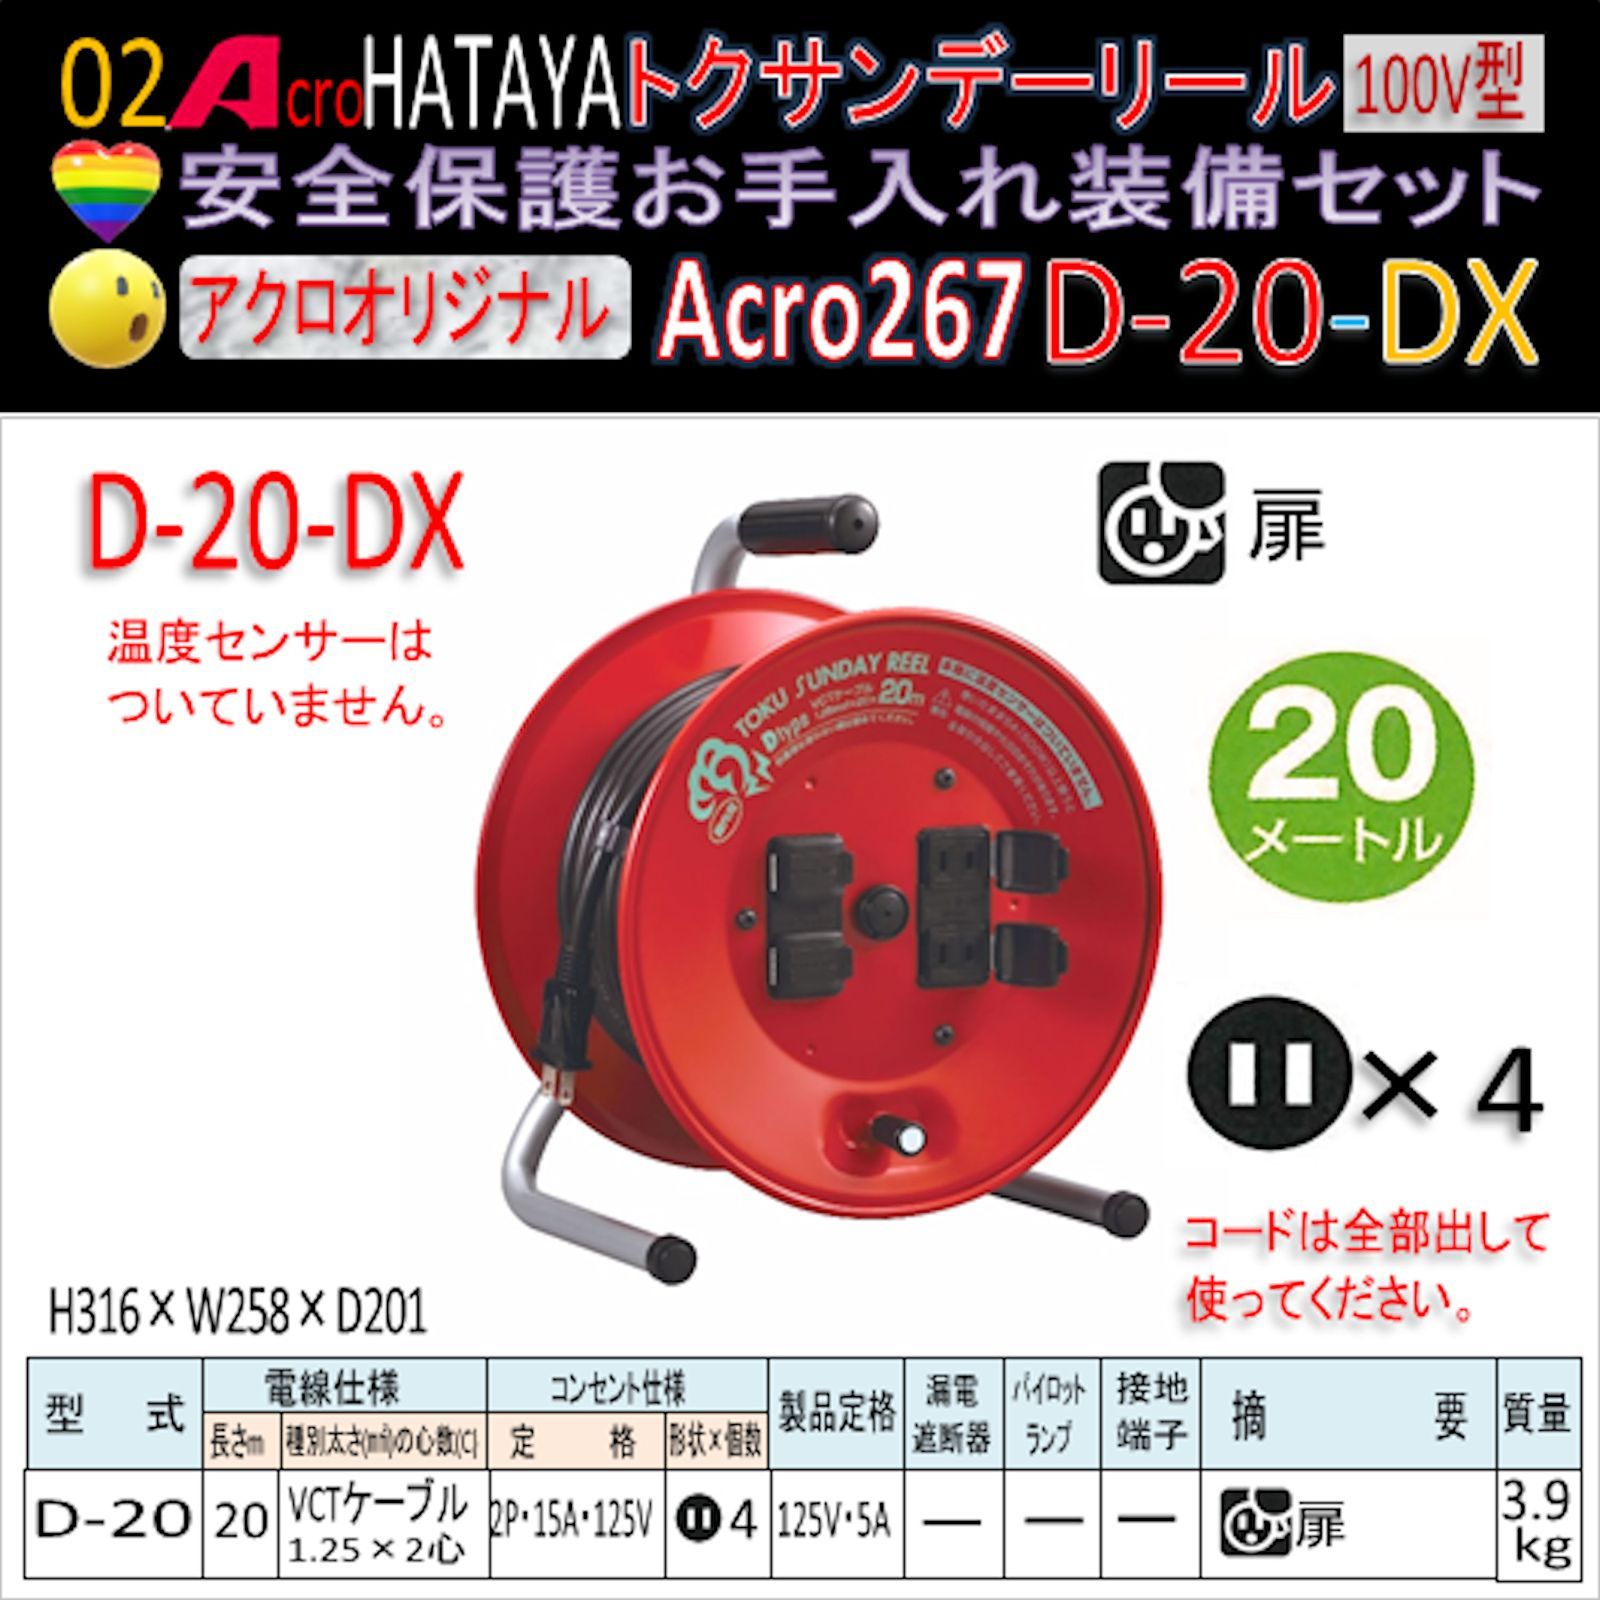 購入新商品 Acro266&HATAYAトクサンデーリールD-20-01 | hyotan.tokyo